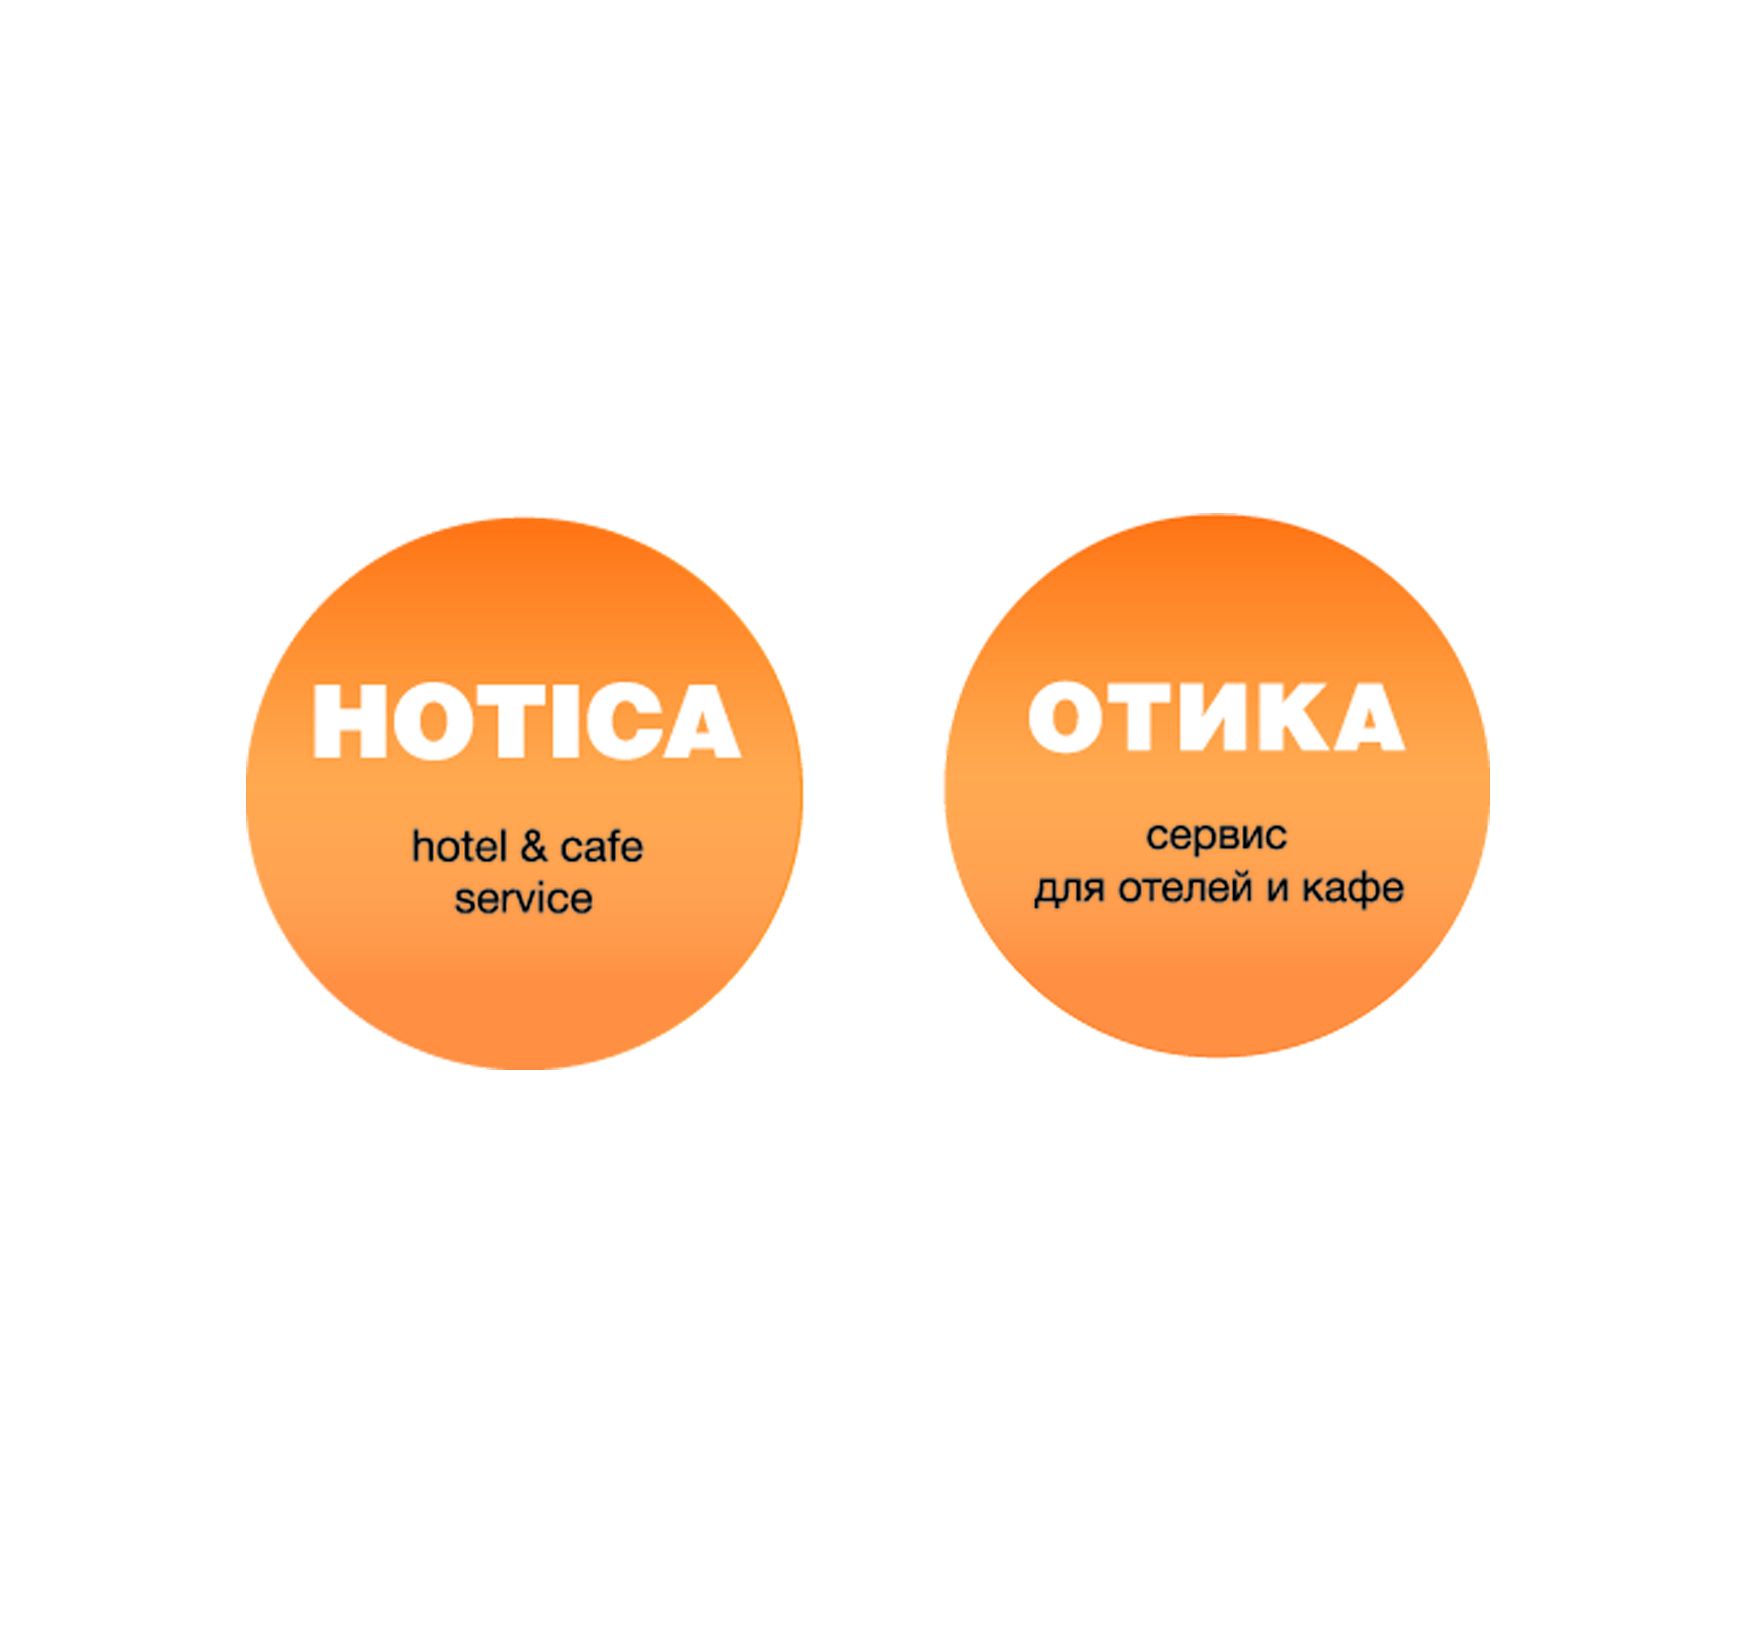 Лого и фирменный стиль для  HOTICA или ОТИКА  (хотелось бы взгляд дизайнера) - дизайнер EvaGonzo